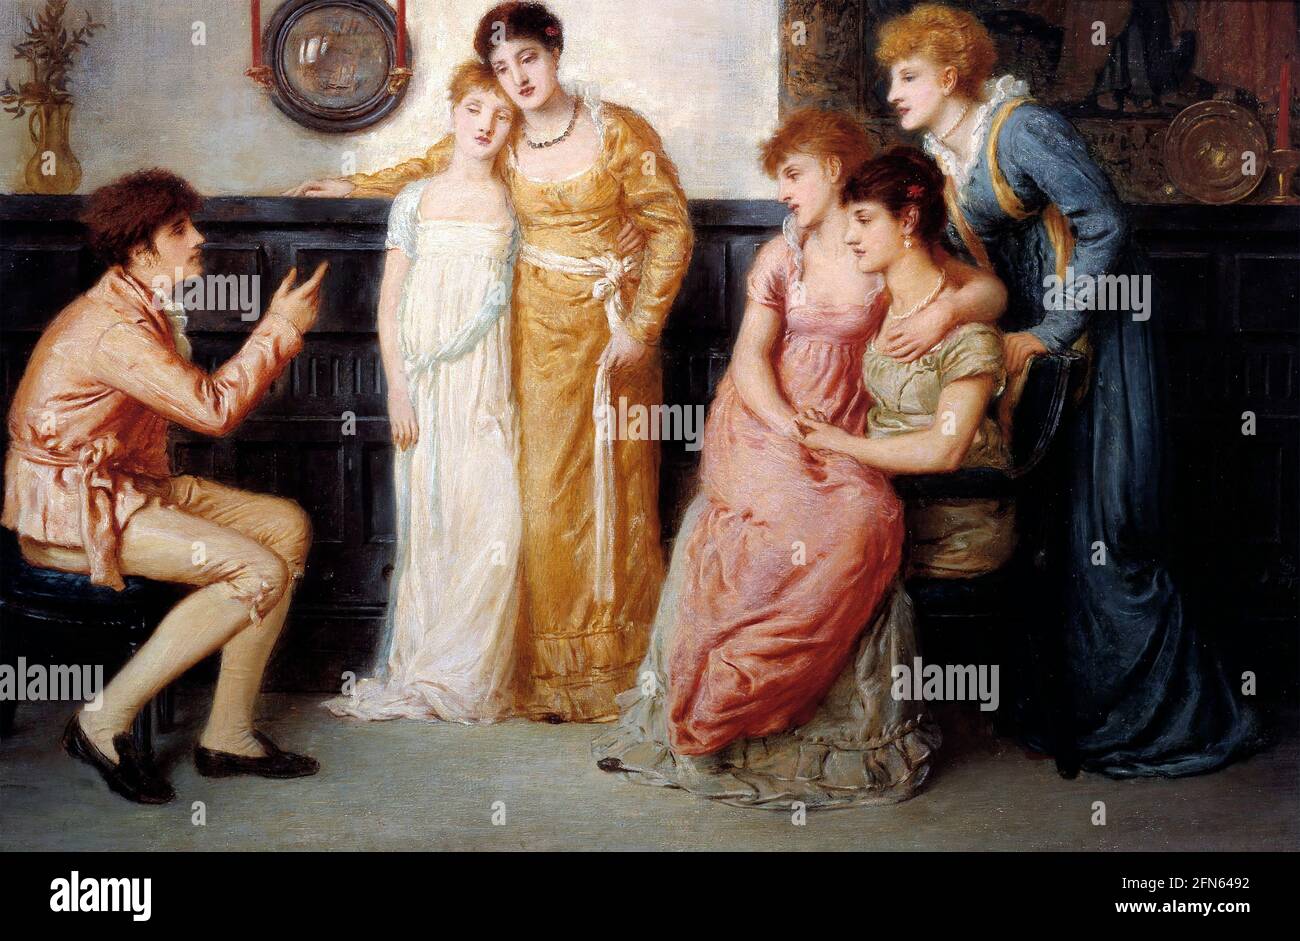 Simeon Solomon. Gemälde mit dem Titel „A Youth relating Tales to Ladies“ des englischen Künstlers Simeon Solomon (1840 -1905), Öl auf Leinwand, 1870 Stockfoto